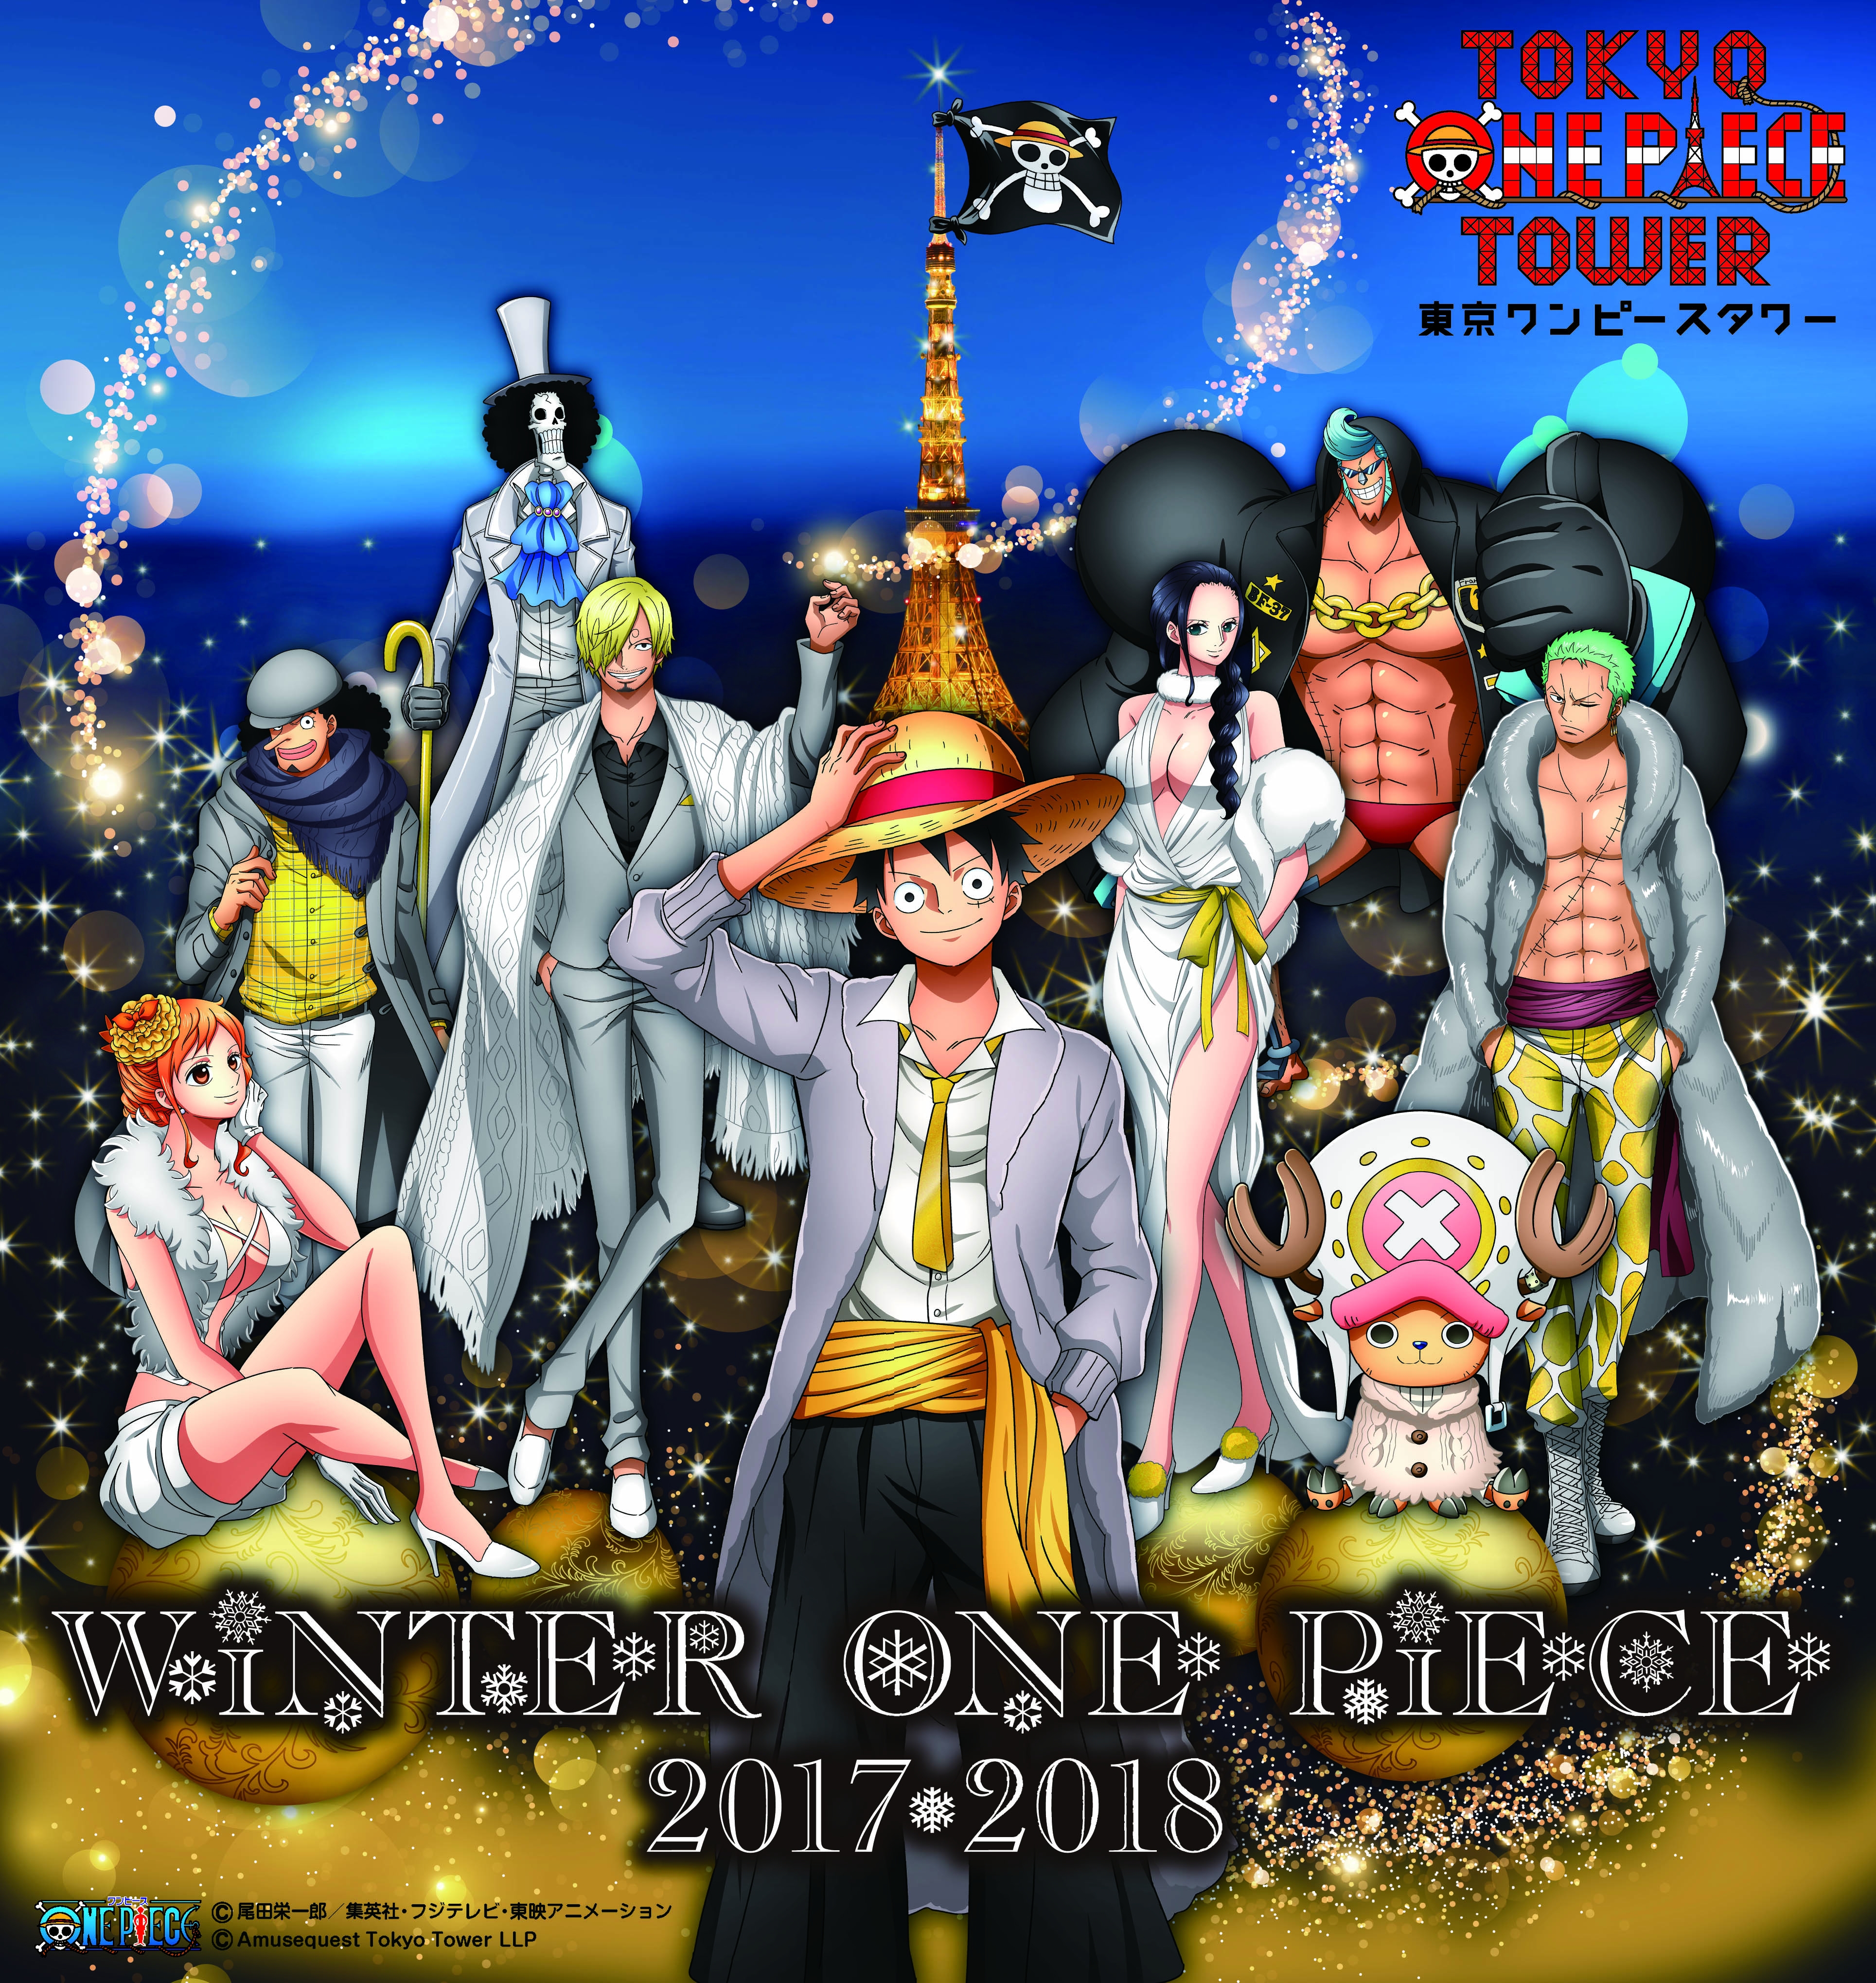 新テーマは 涙 ナミダ One Piece 連載20周年記念特別企画展 ログ ギャラリー Season3 12月1日 金 よりスタート 東京 ワンピースタワーのプレスリリース